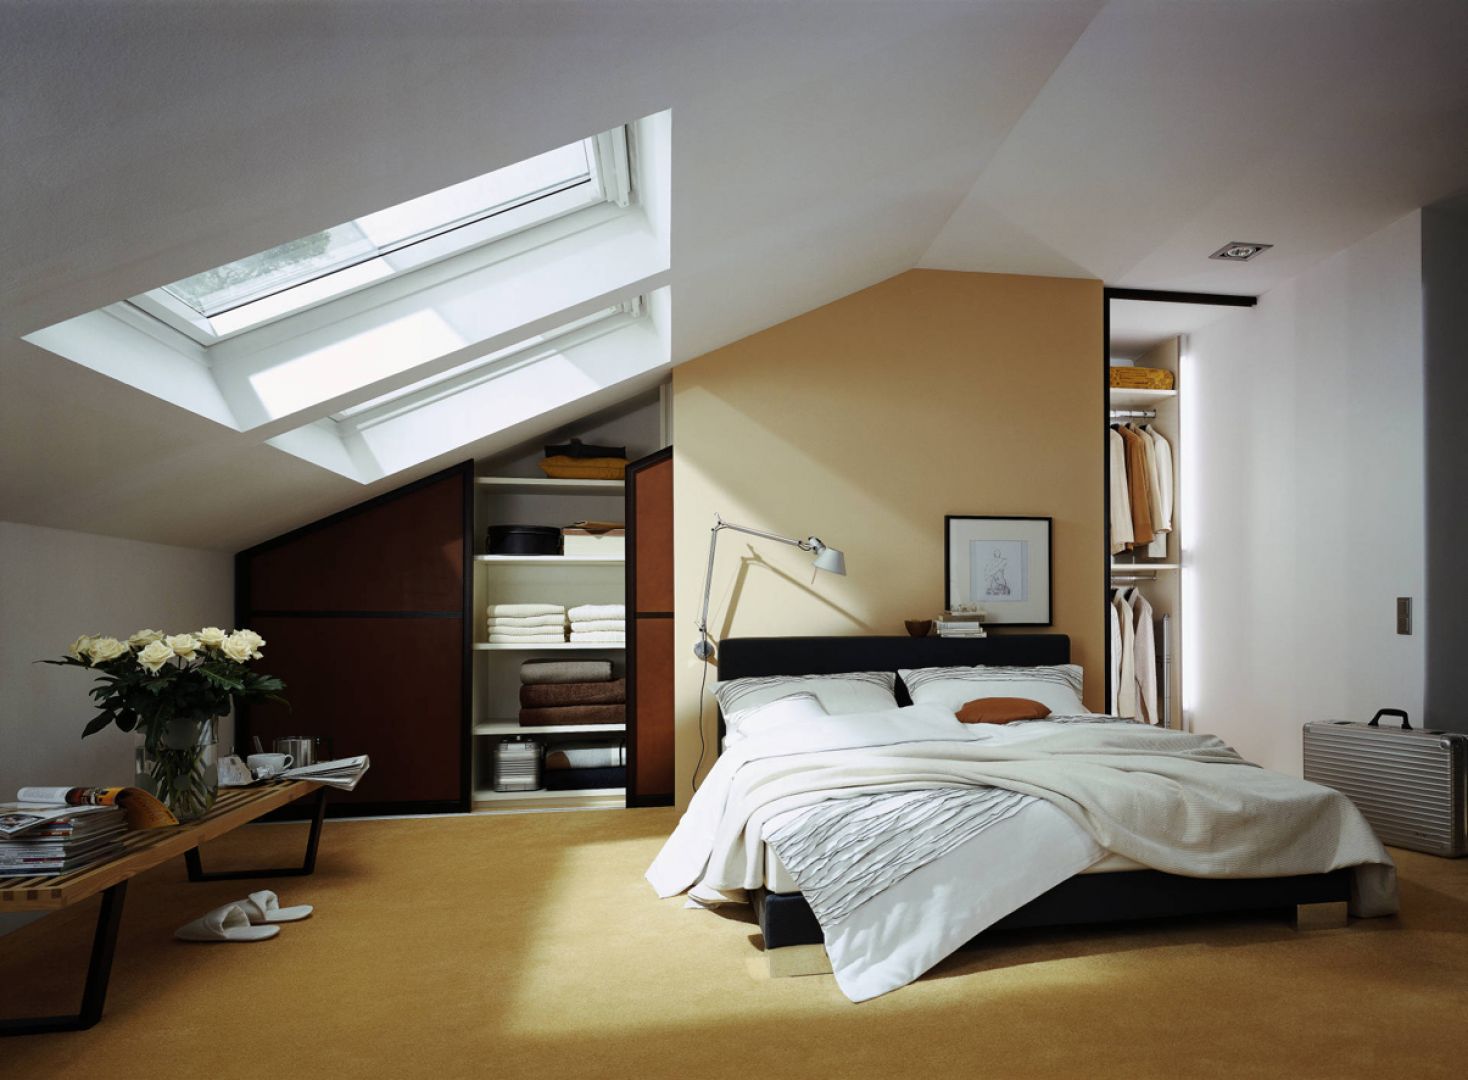 Sypialnia na poddaszu to dzisiaj standard. Jeśli masz pod skosami małe pomieszczenie bez dostępu światła, wykorzystaj je właśnie do zaprojektowania garderoby. Fot. Raumplus 